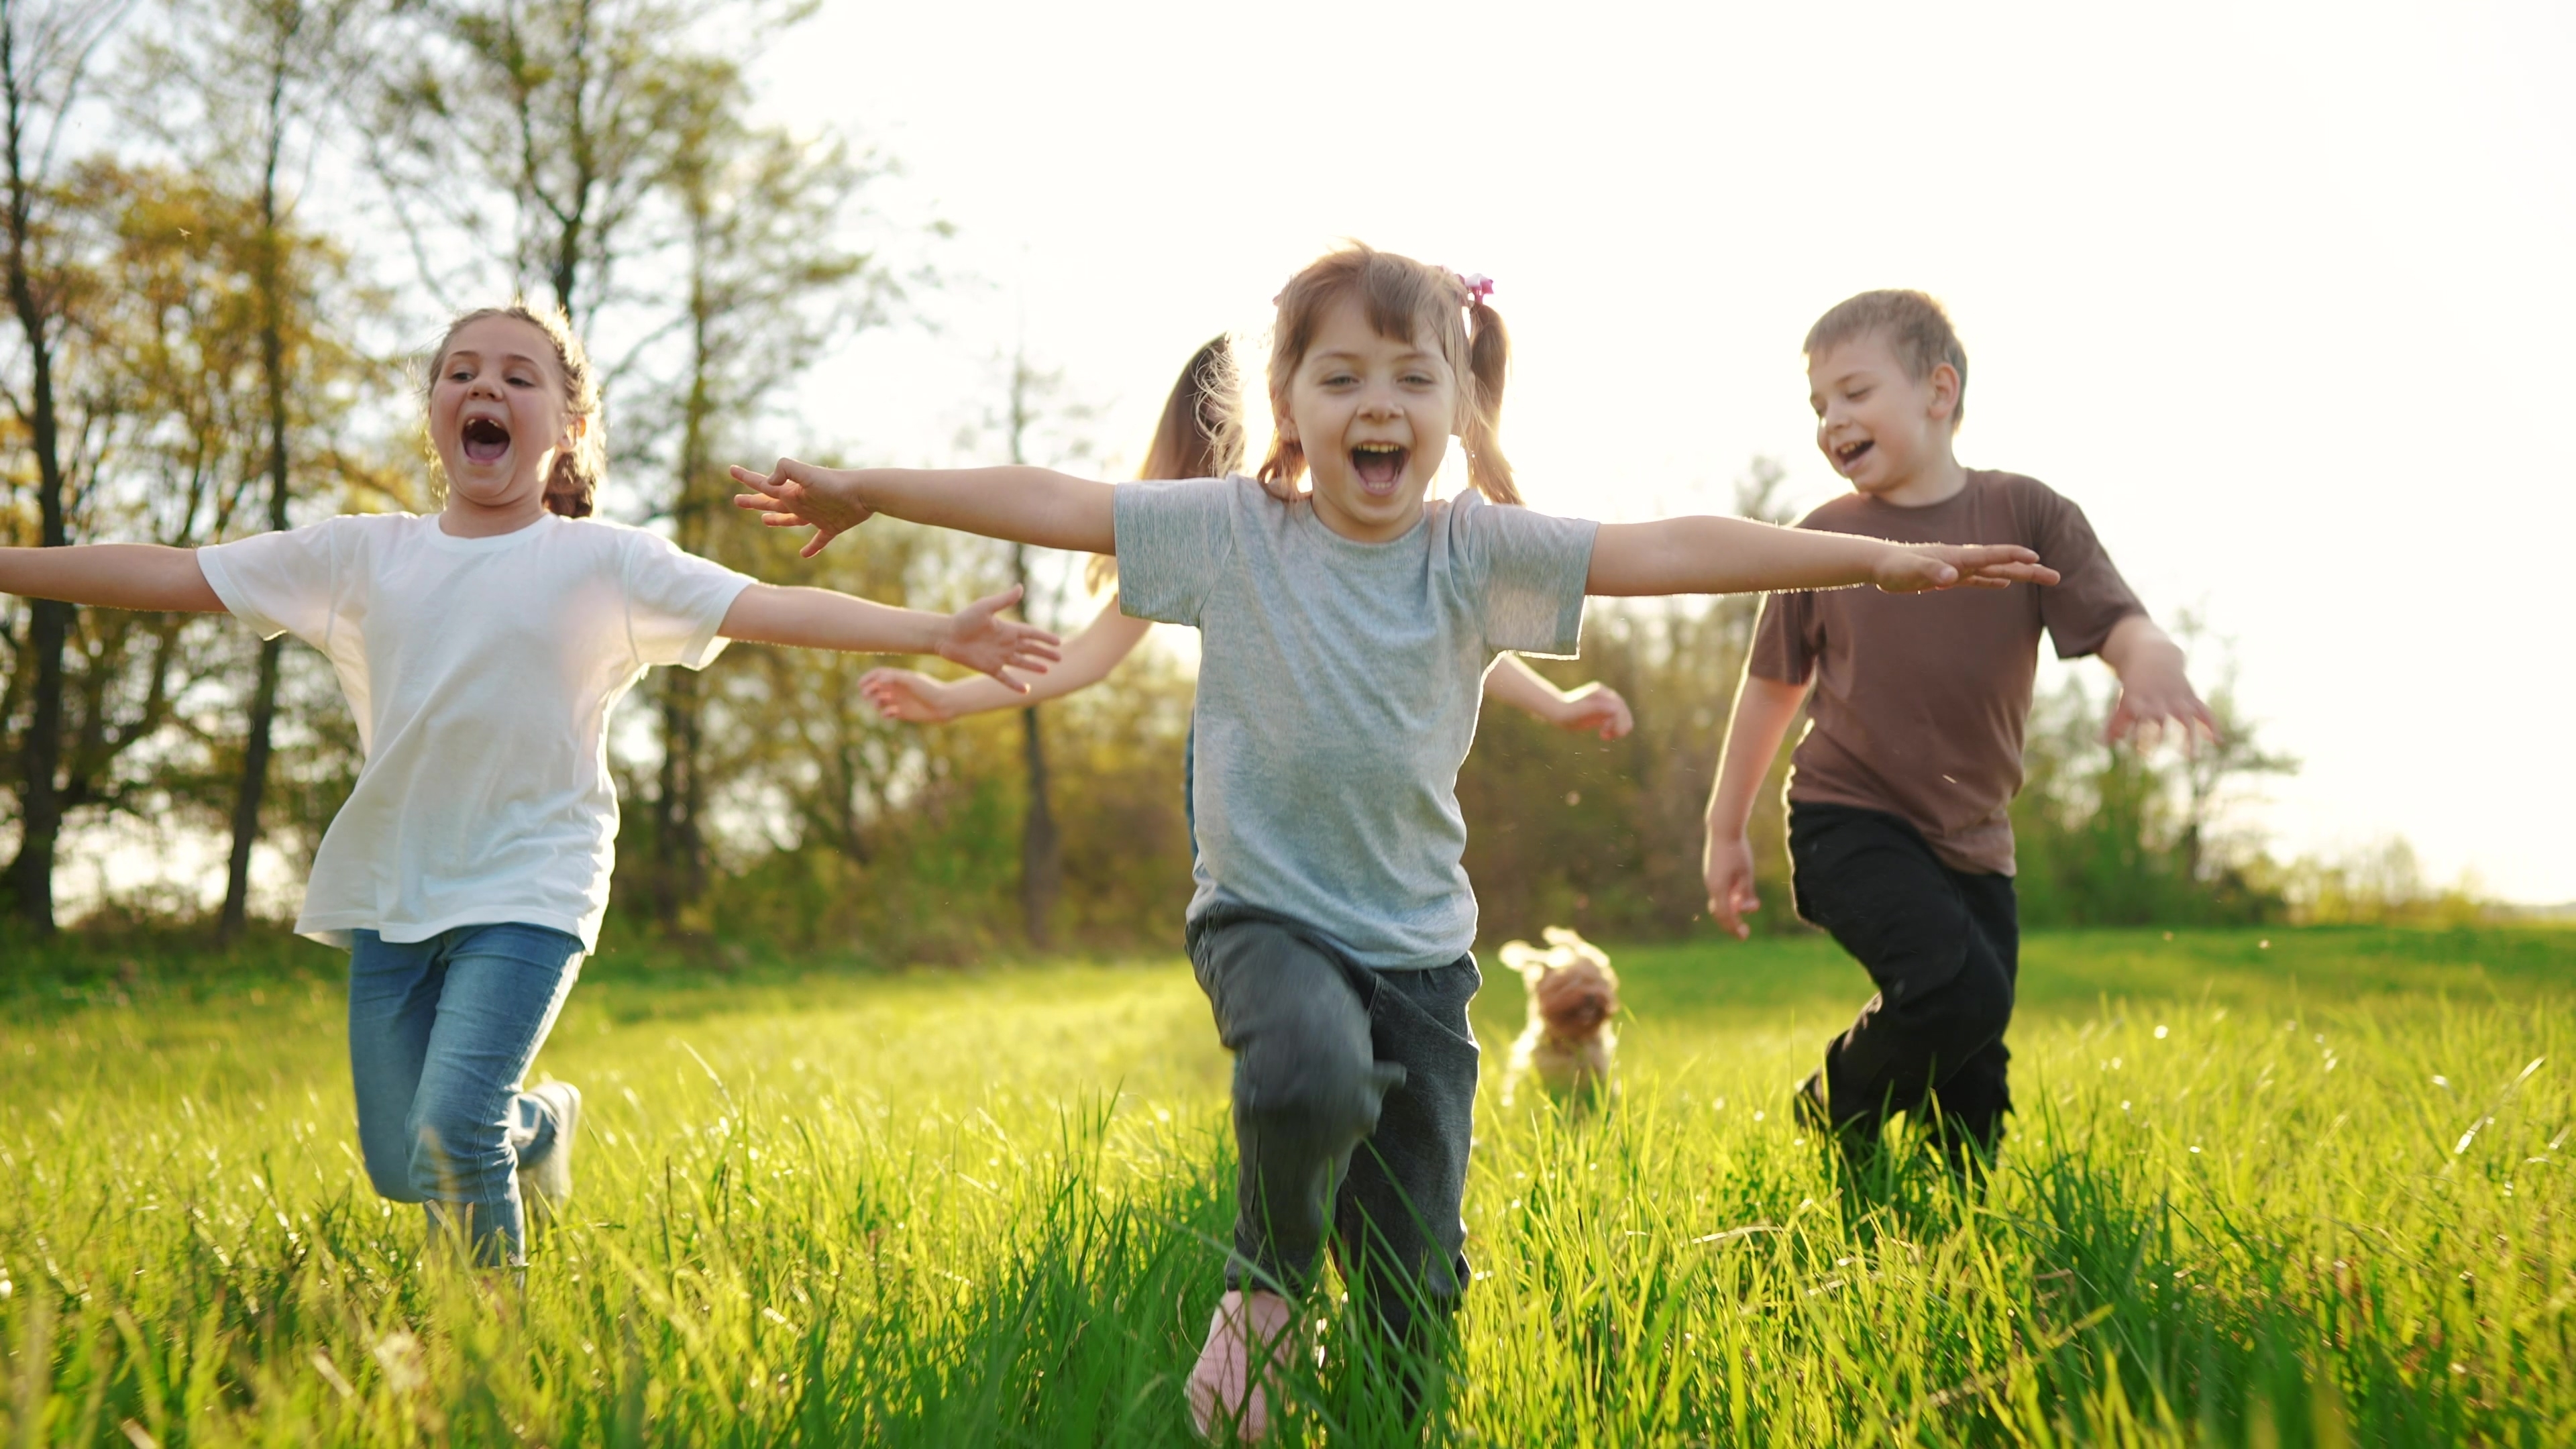 Un groupe de jeunes enfants heureux est photographié en train de s'amuser à l'extérieur | Source : Shutterstock